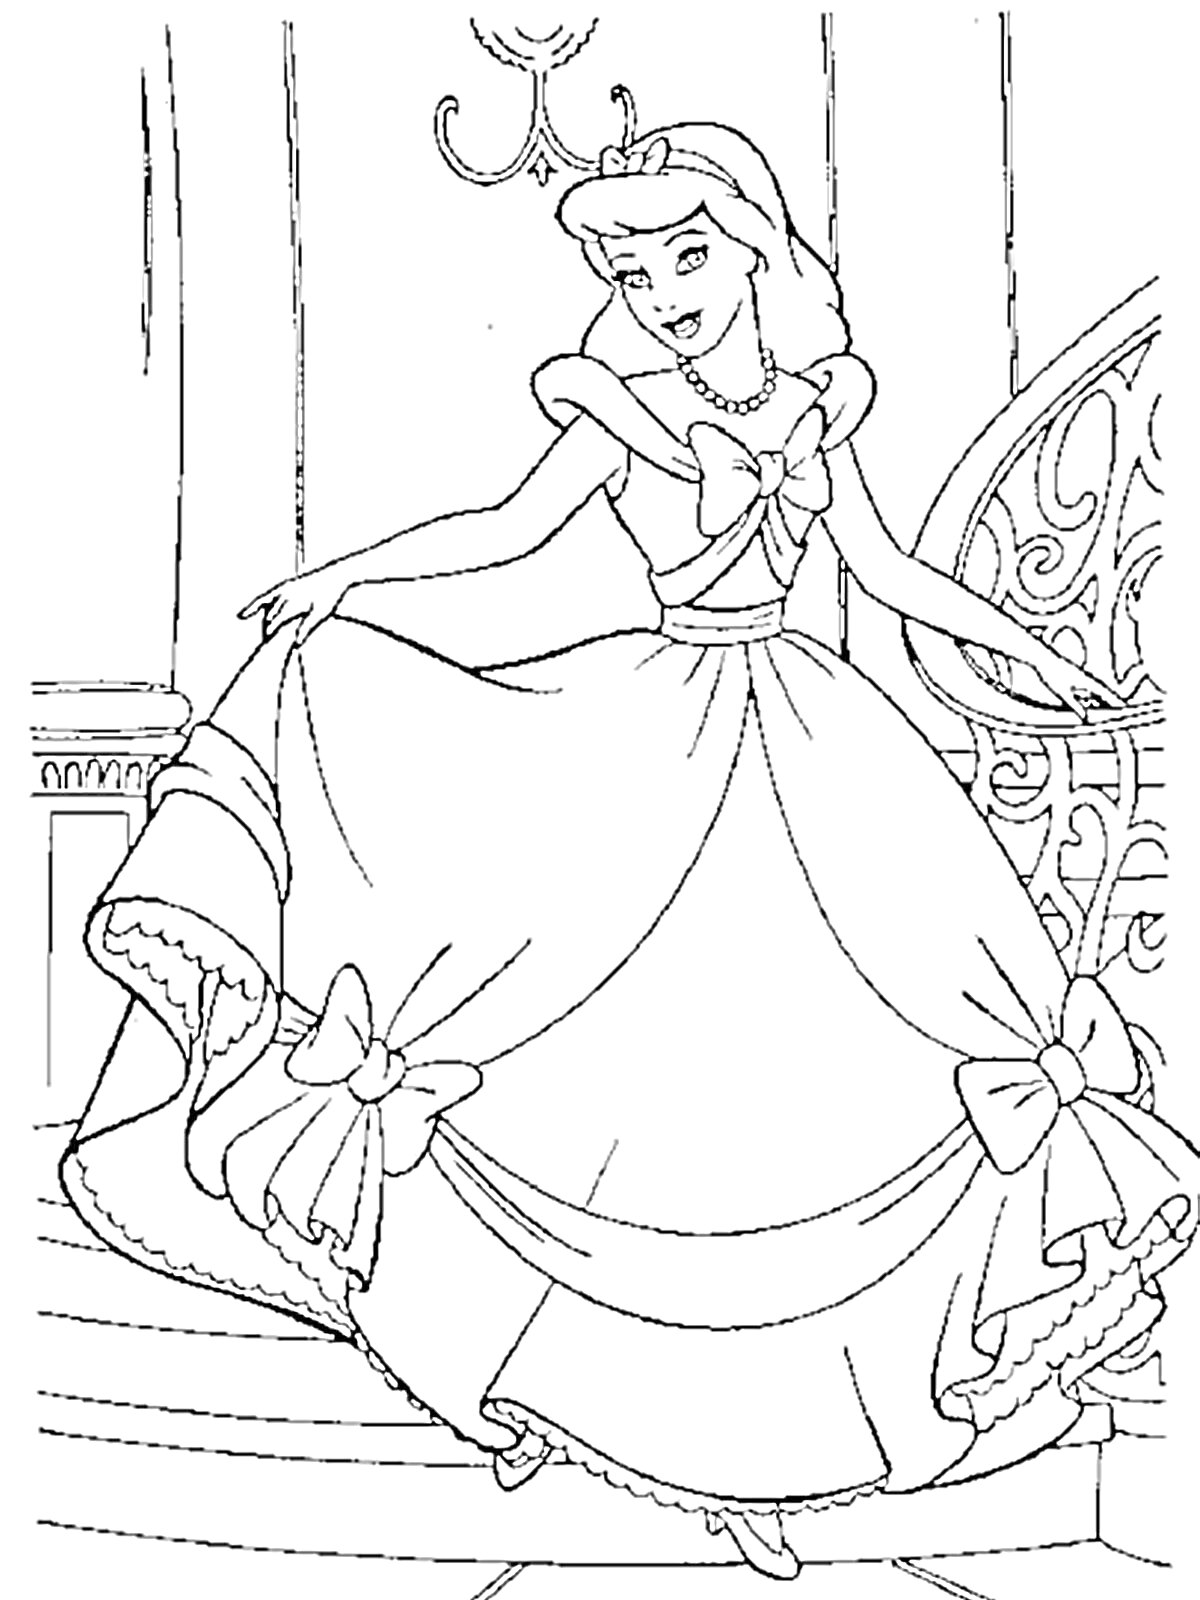 Раскраска Золушка на лестнице в длинном платье с большими бантиками